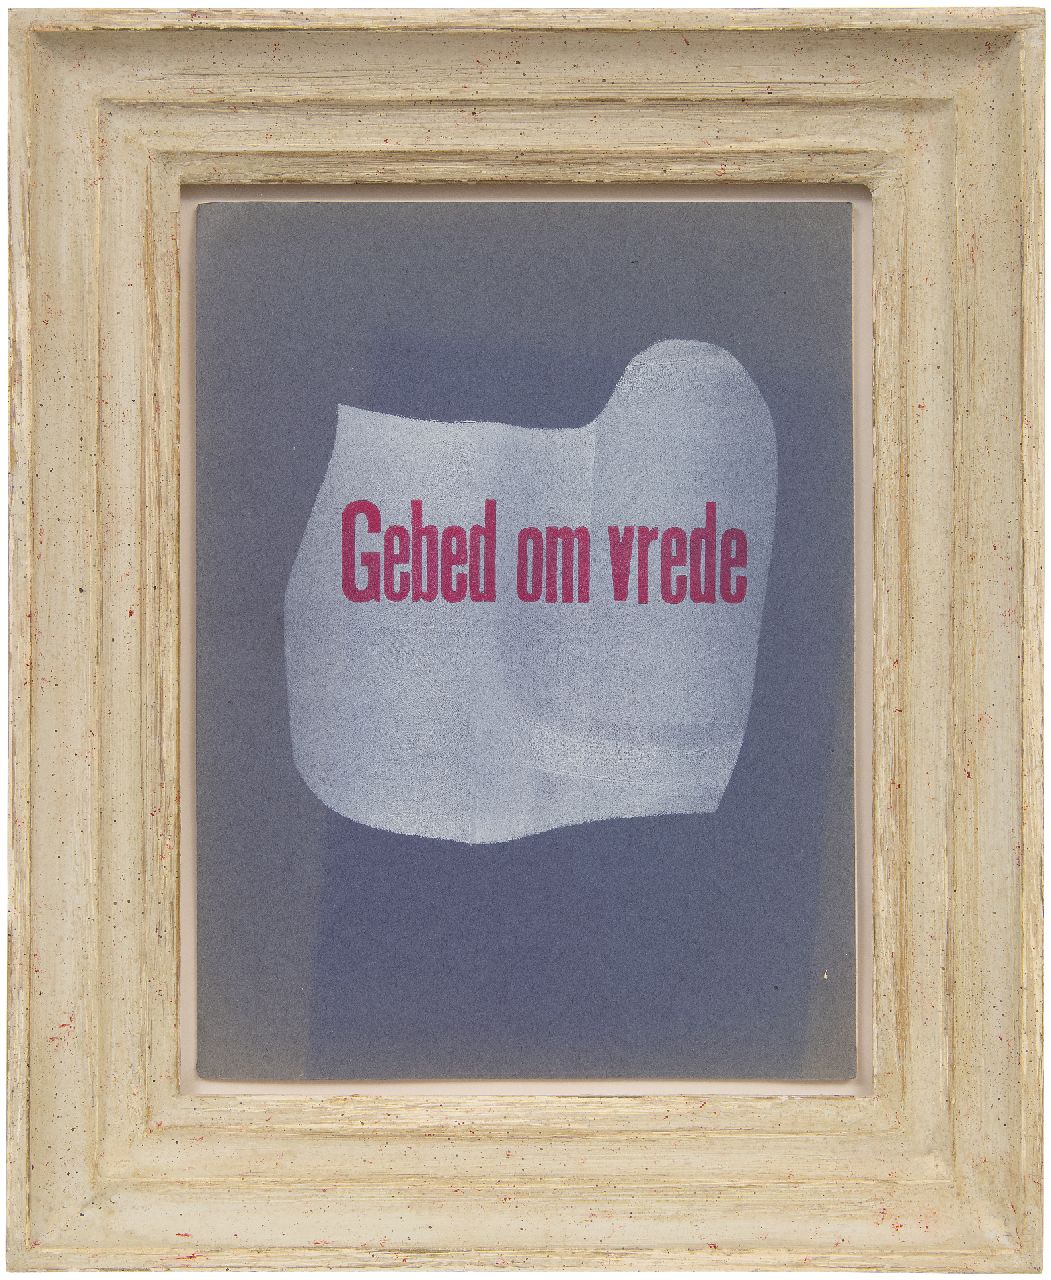 Werkman H.N.  | Hendrik Nicolaas Werkman |  te koop aangeboden | De Blauwe Schuit: Gebed om vrede, sjabloondruk op papier 29,2 x 22,0 cm, gedateerd Mei 1943